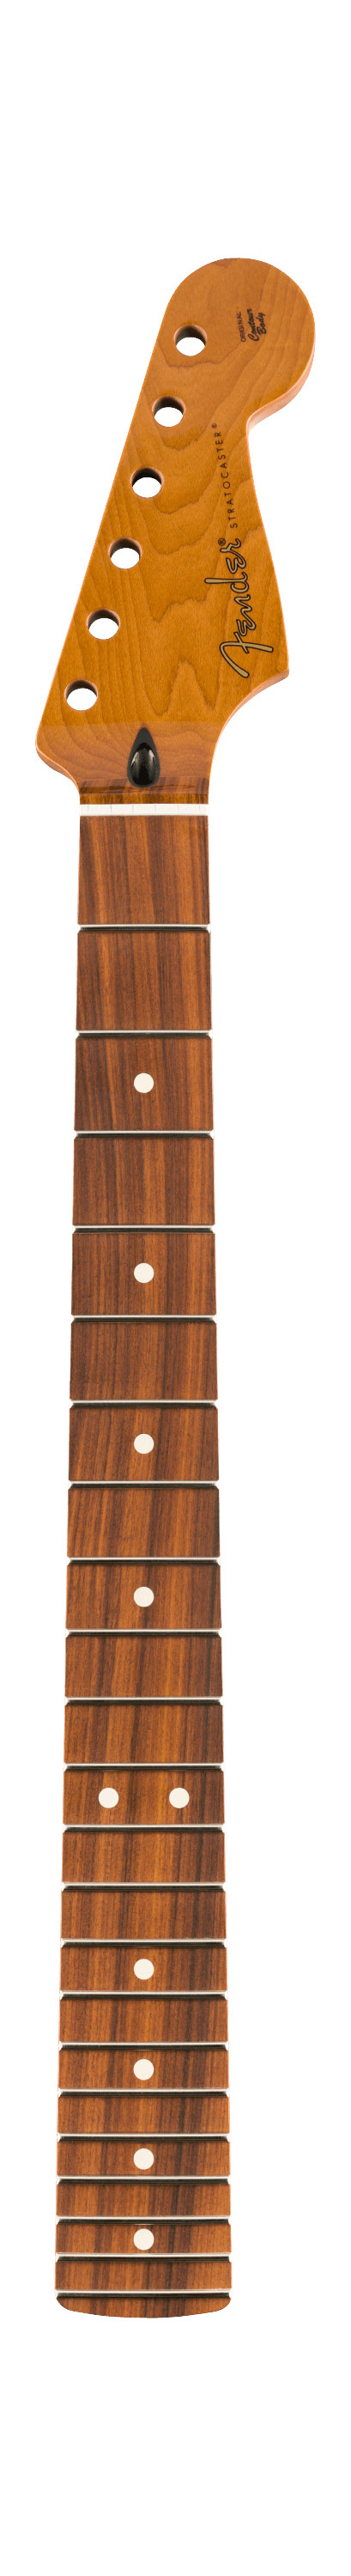 Fender Roasted Maple Stratocaster Neck, 22 Jumbo Frets, 12 Inch